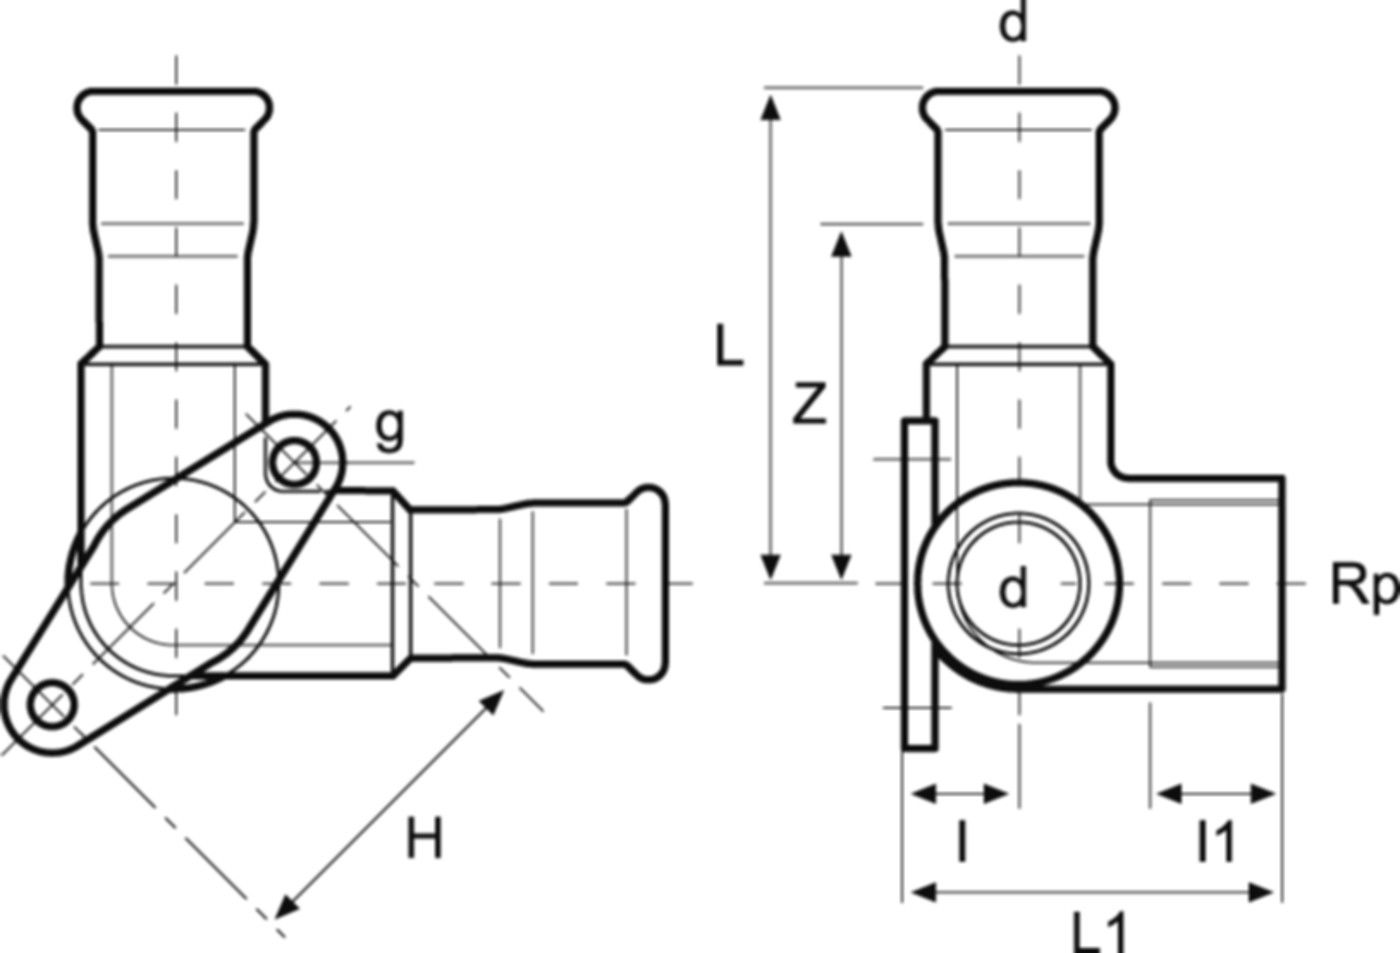 Armaturenanschlusswinkel 90°/2 mit IG/WA 15 mm - 1/2" - 15 mm S36PC - Eurotubi Press-Formstücke Sanitär